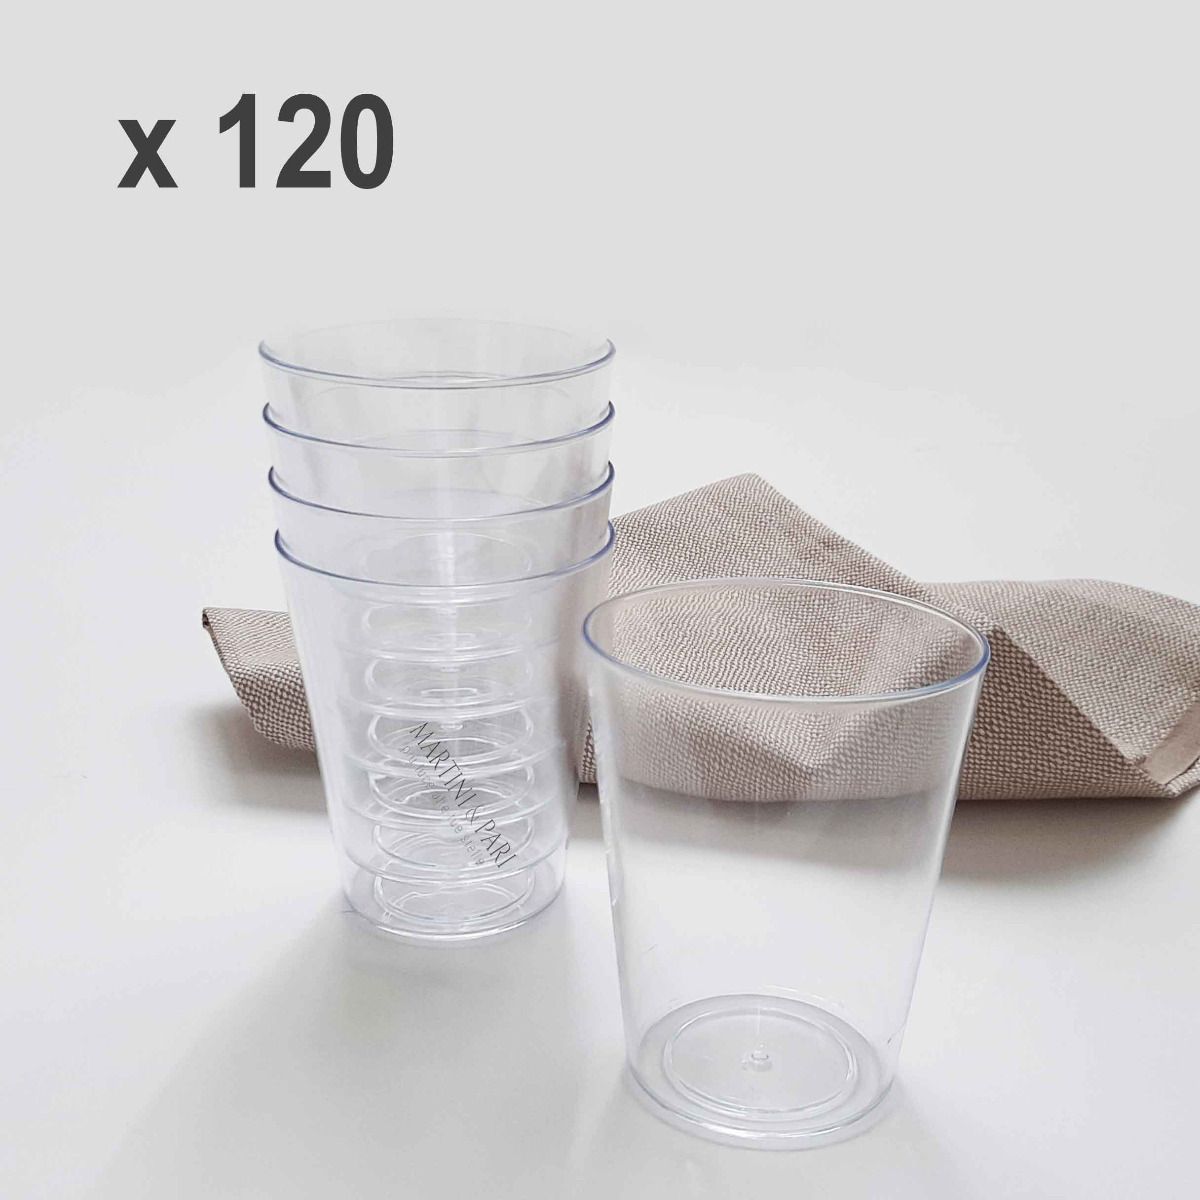 Bicchieri in plastica dura infrangibili e riutilizzabili